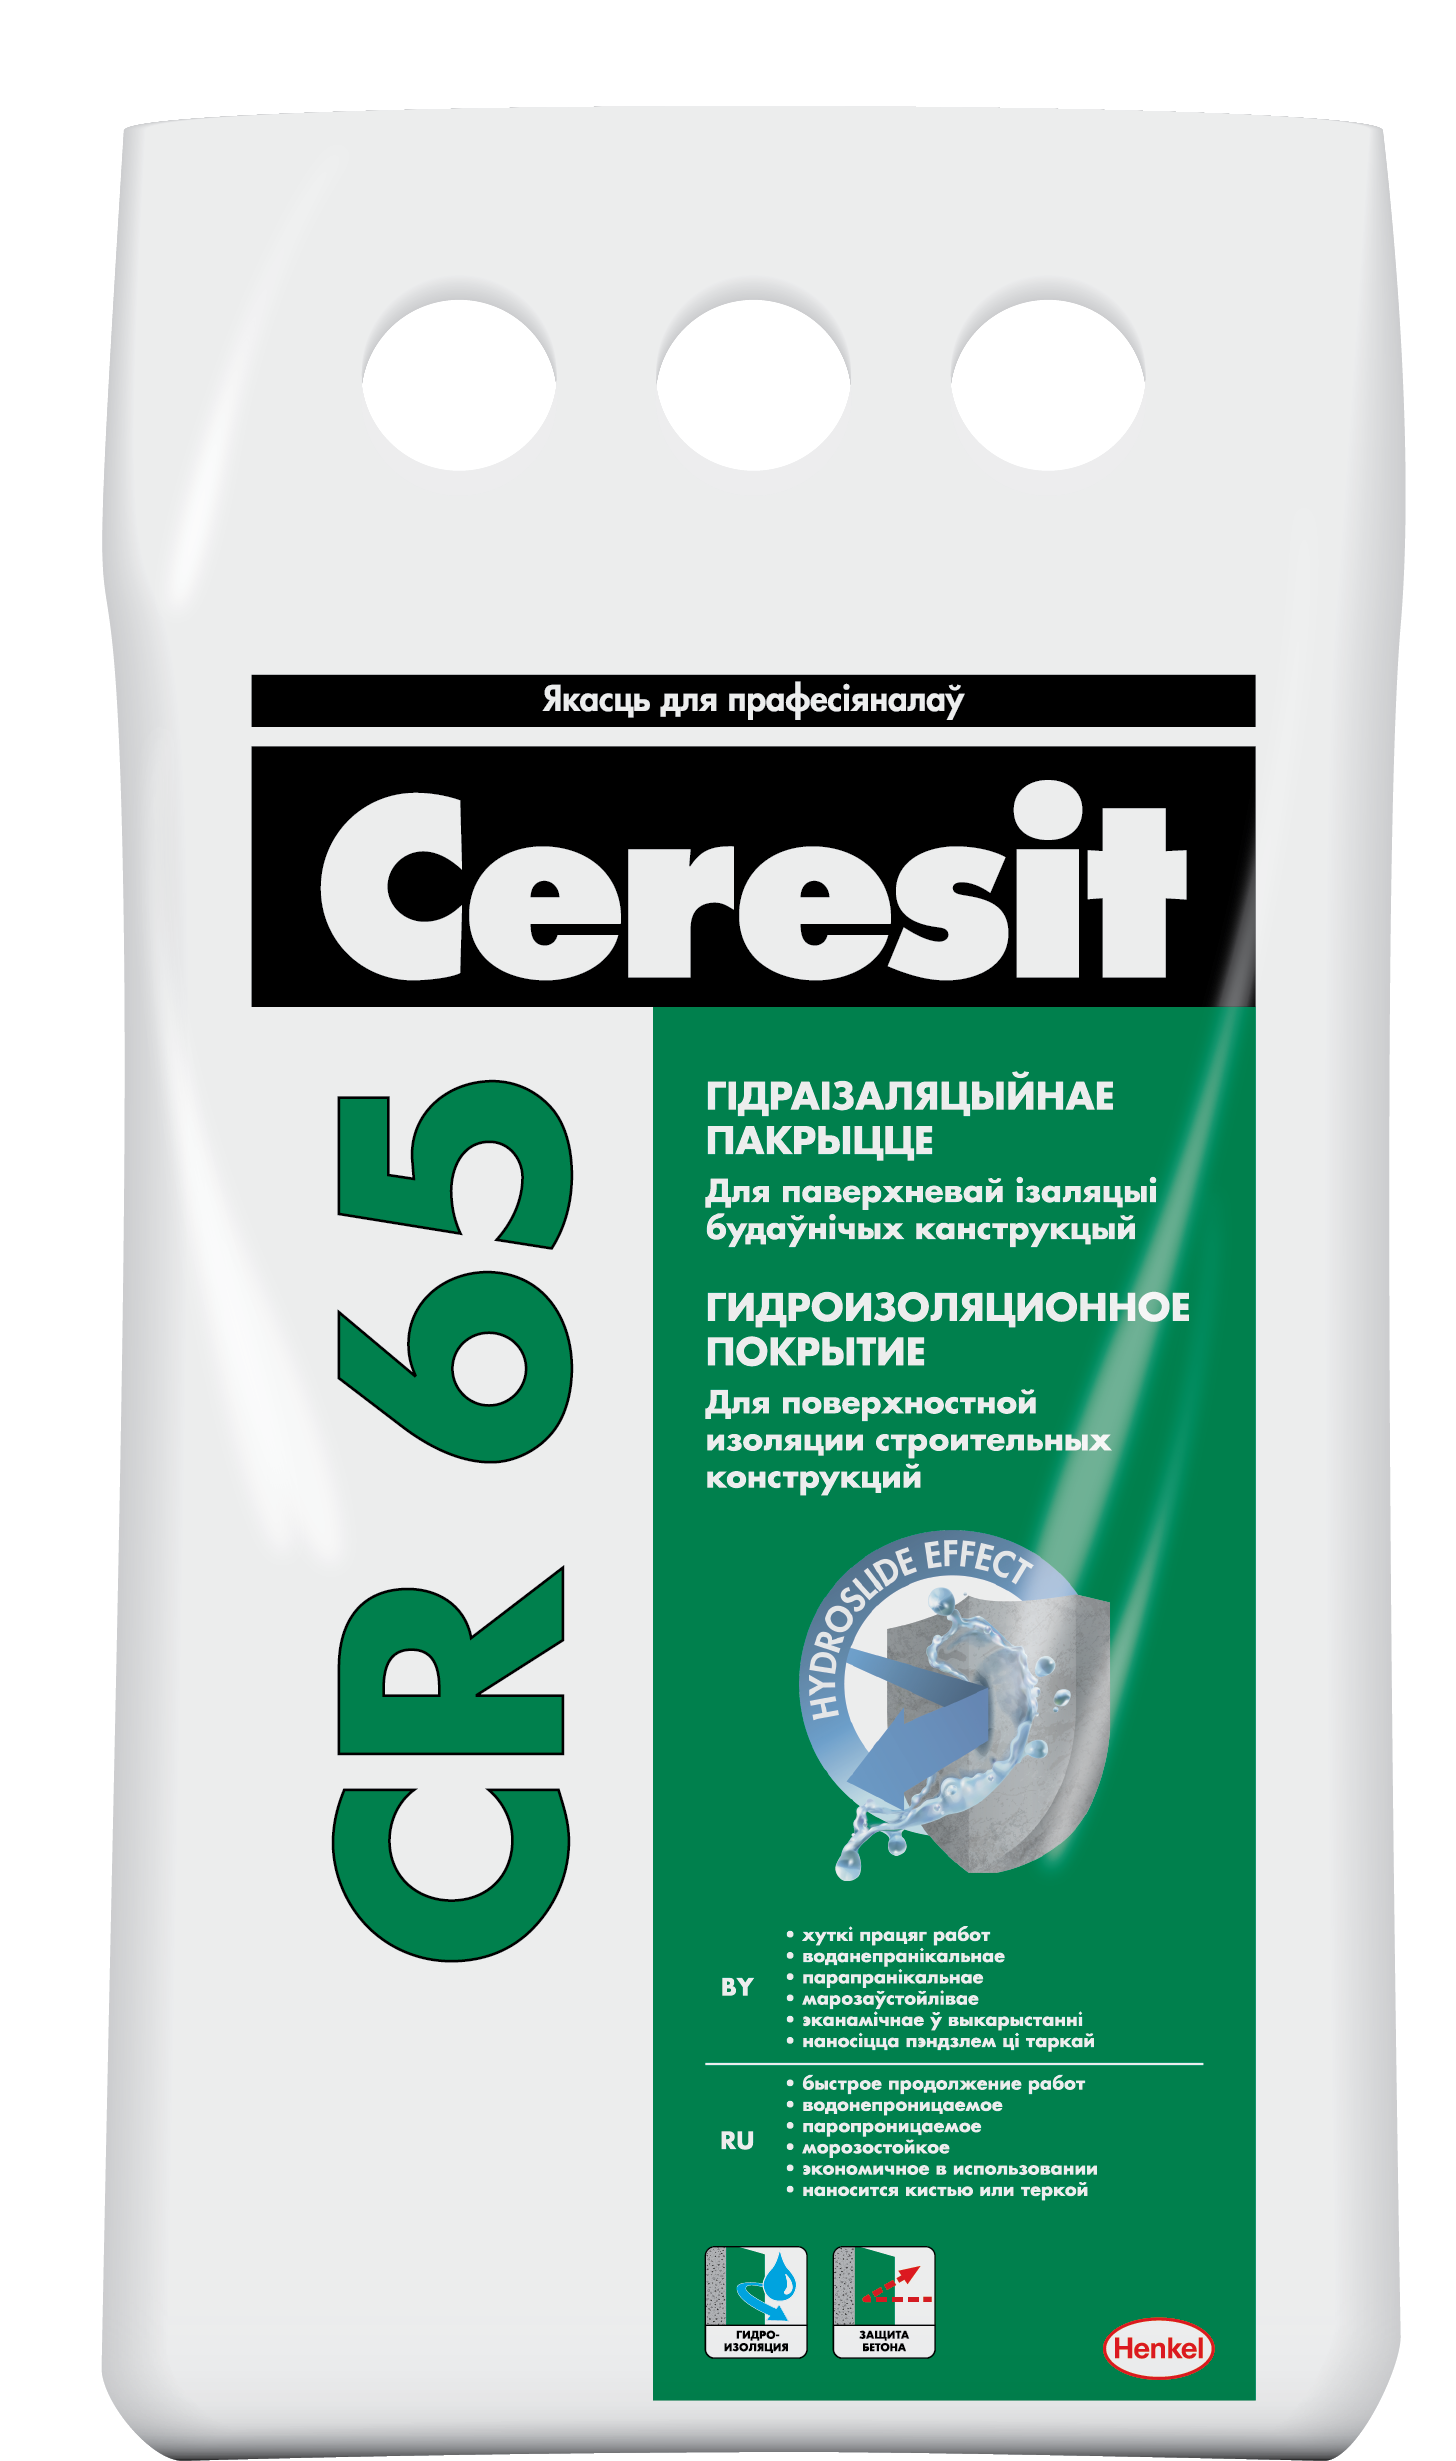 CERESIT CR 65 Гидроизоляционное покрытие, 5кг(РБ) 